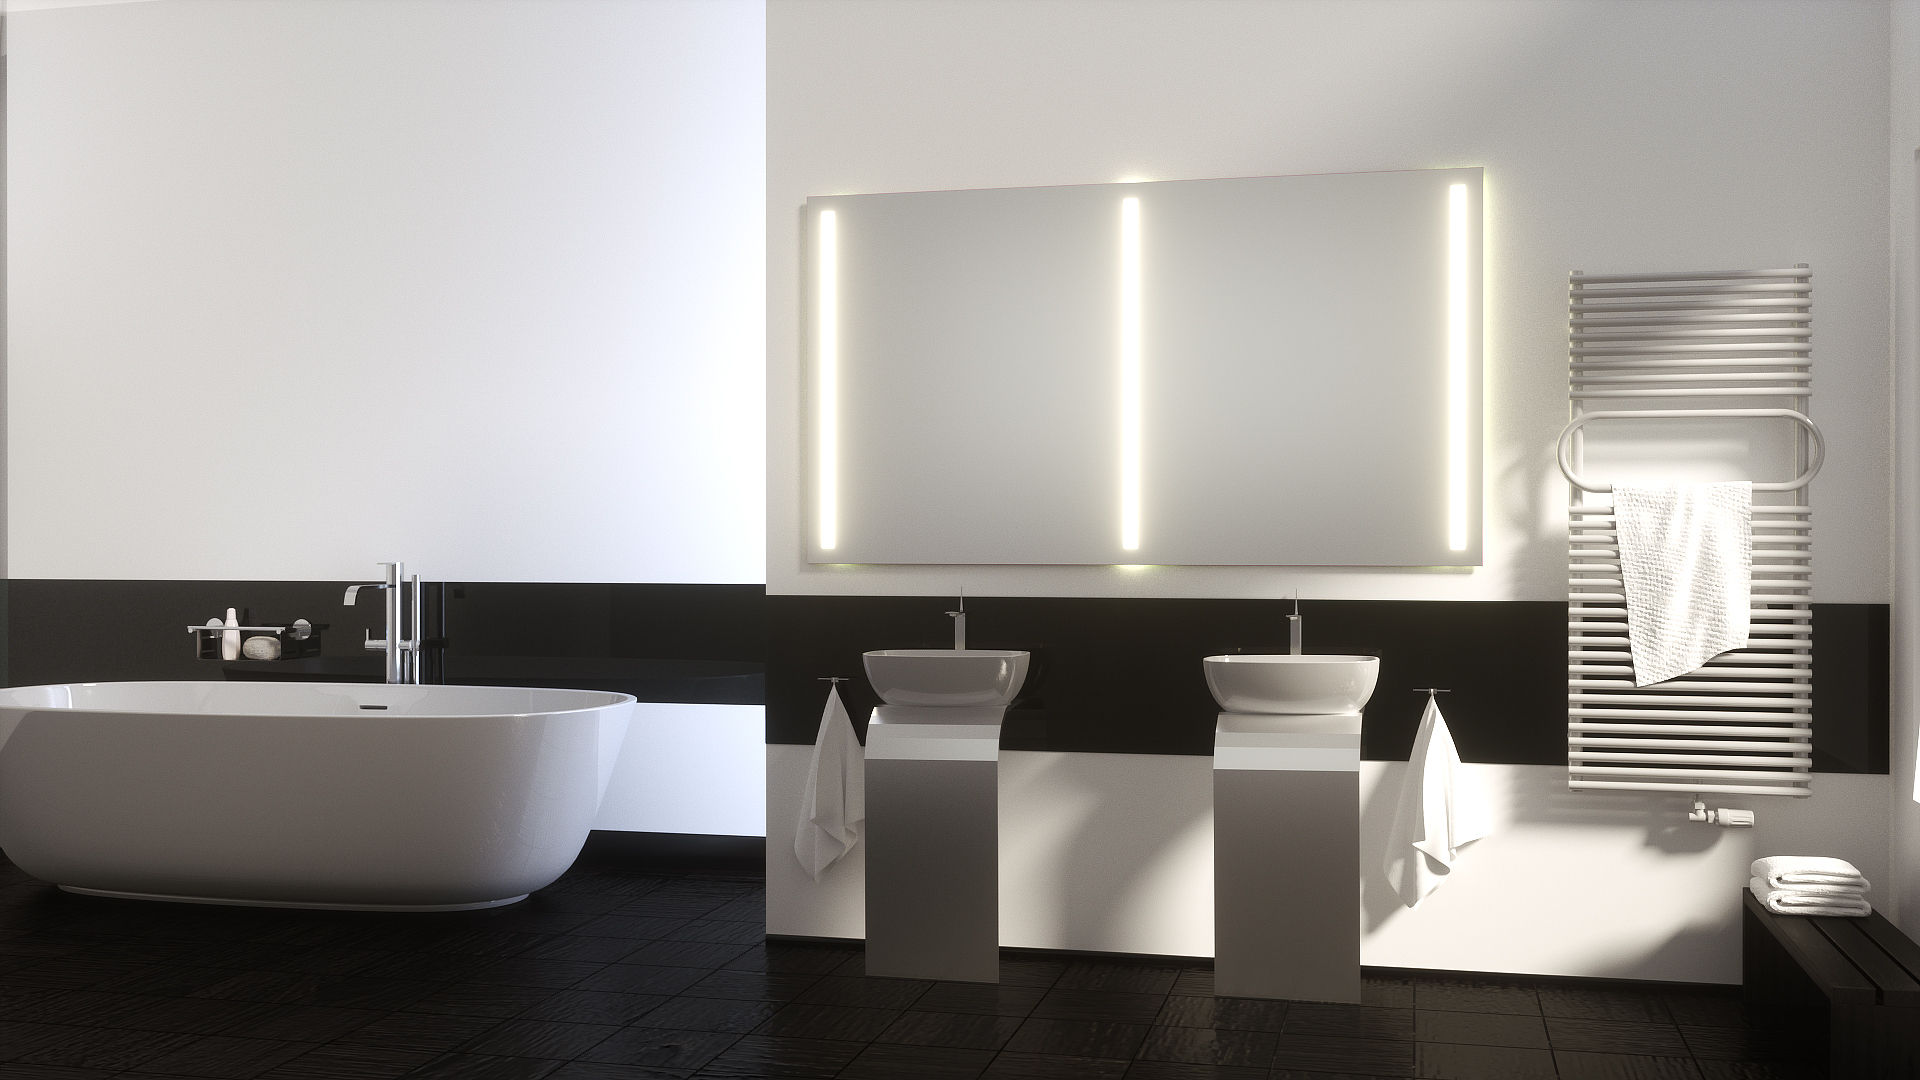 Badspiegel mit Hinterleuchtung, Schreiber Licht-Design-GmbH Schreiber Licht-Design-GmbH Ванная комната в стиле модерн Зеркала